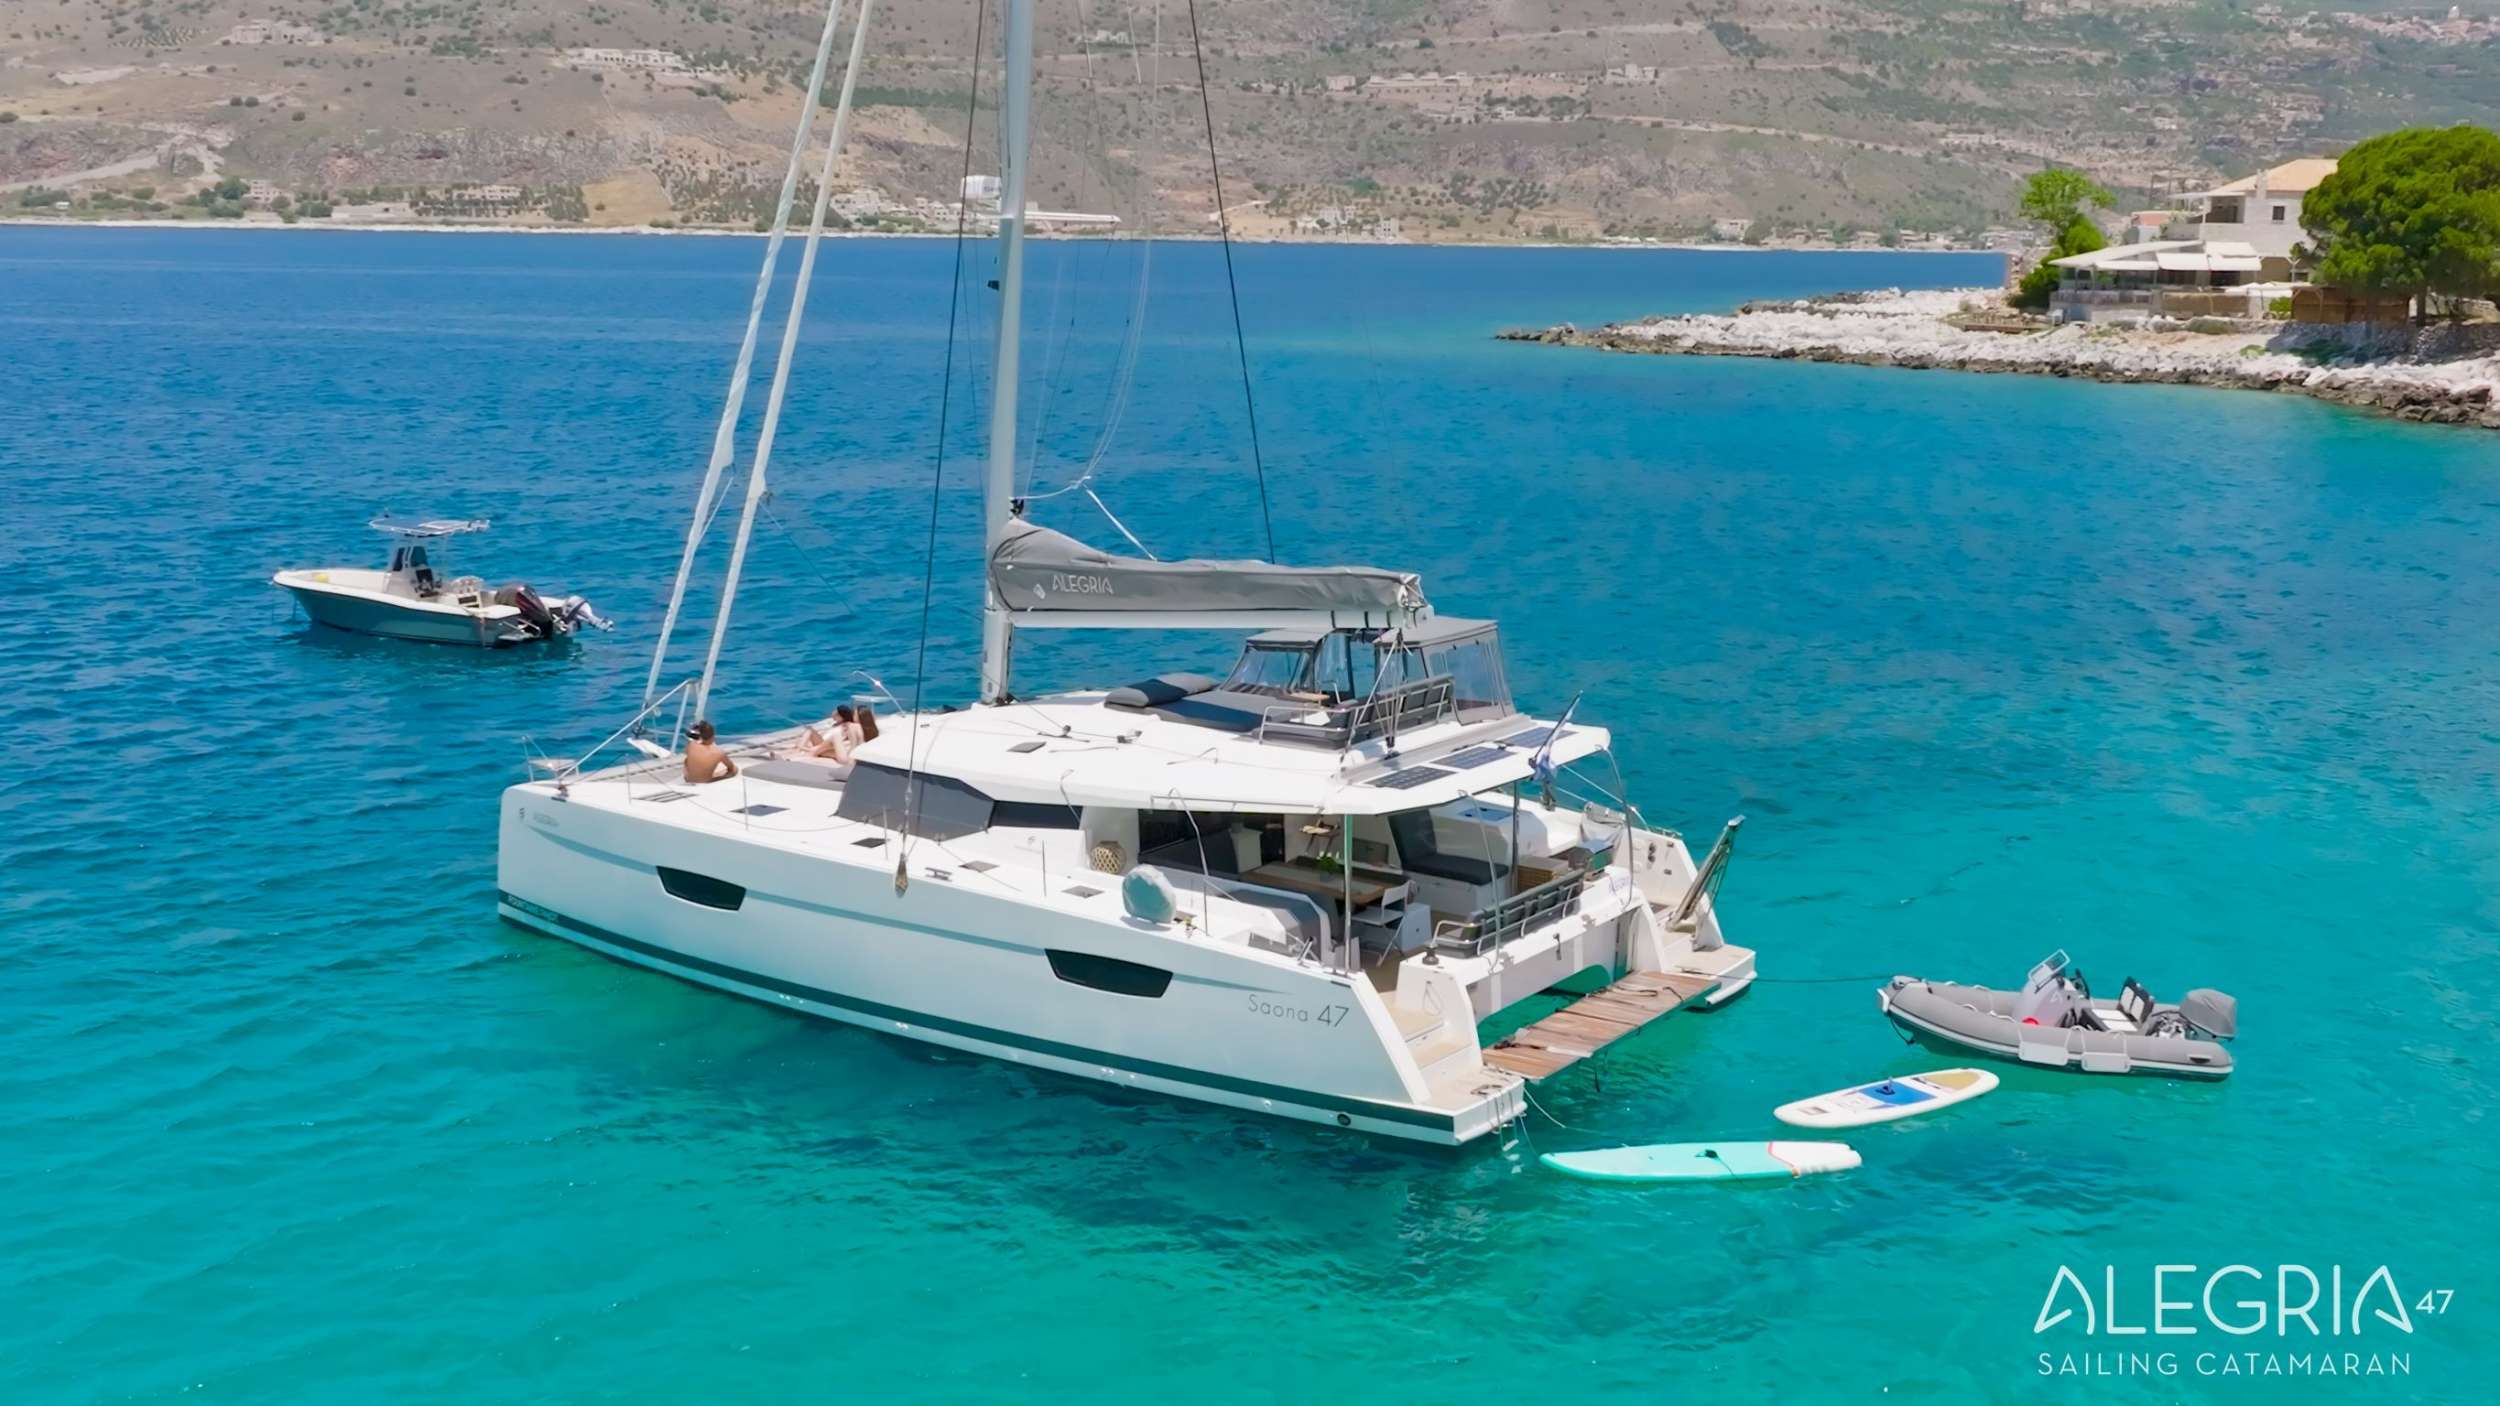 ALEGRIA - Yacht Charter Porto Koufo & Boat hire in Greece 2